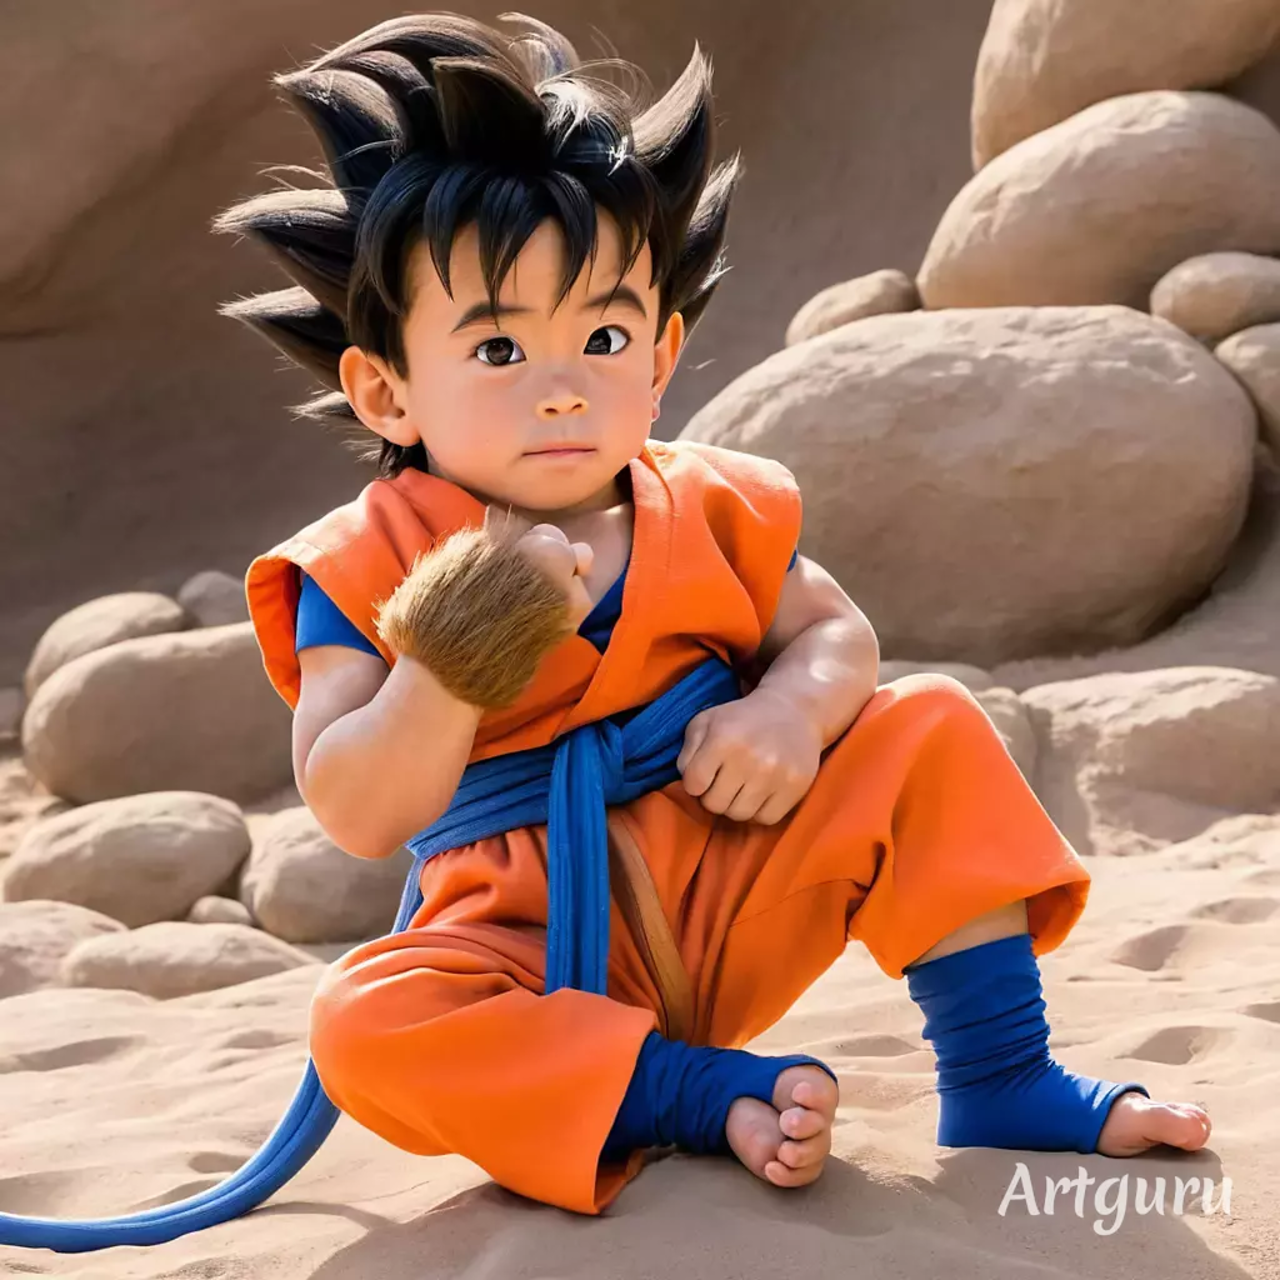 Al explorar la apariencia de Goku en la vida real, según la inteligencia artificial, se despierta la curiosidad sobre cómo este querido personaje se adaptaría a nuestro entorno cotidiano.